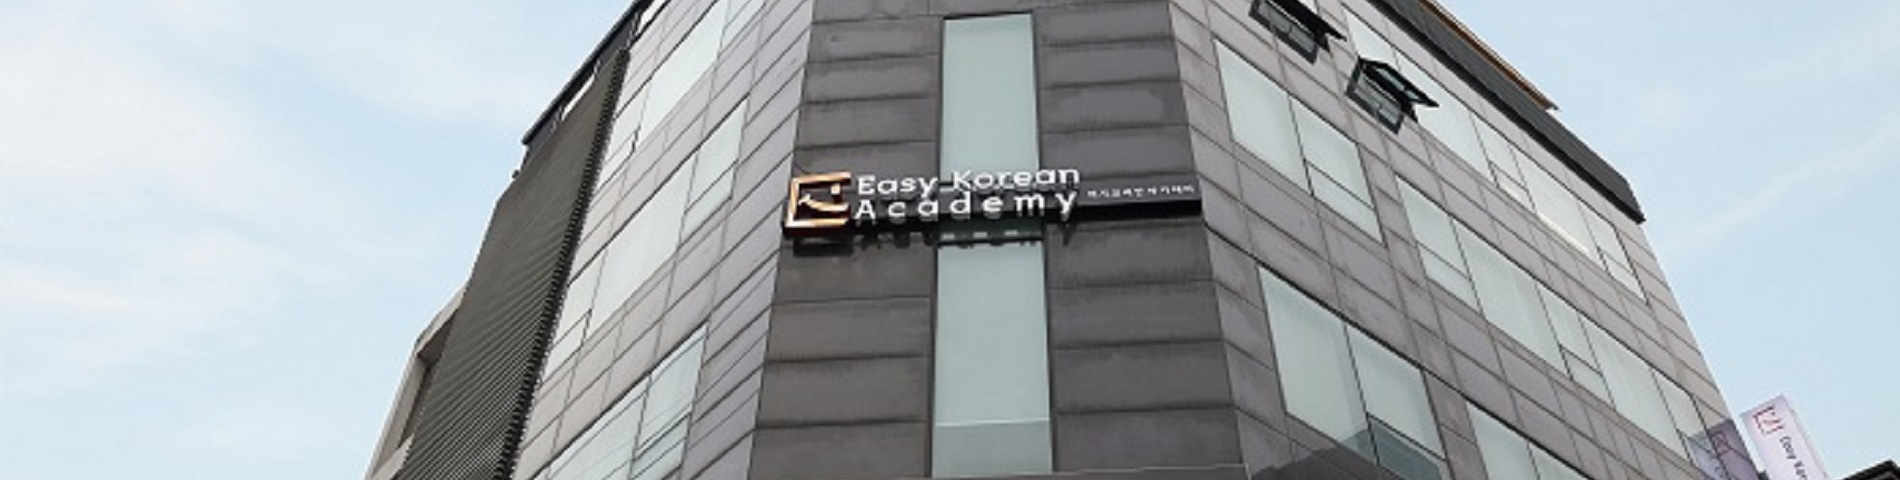 Easy Korean Academy 사진 1